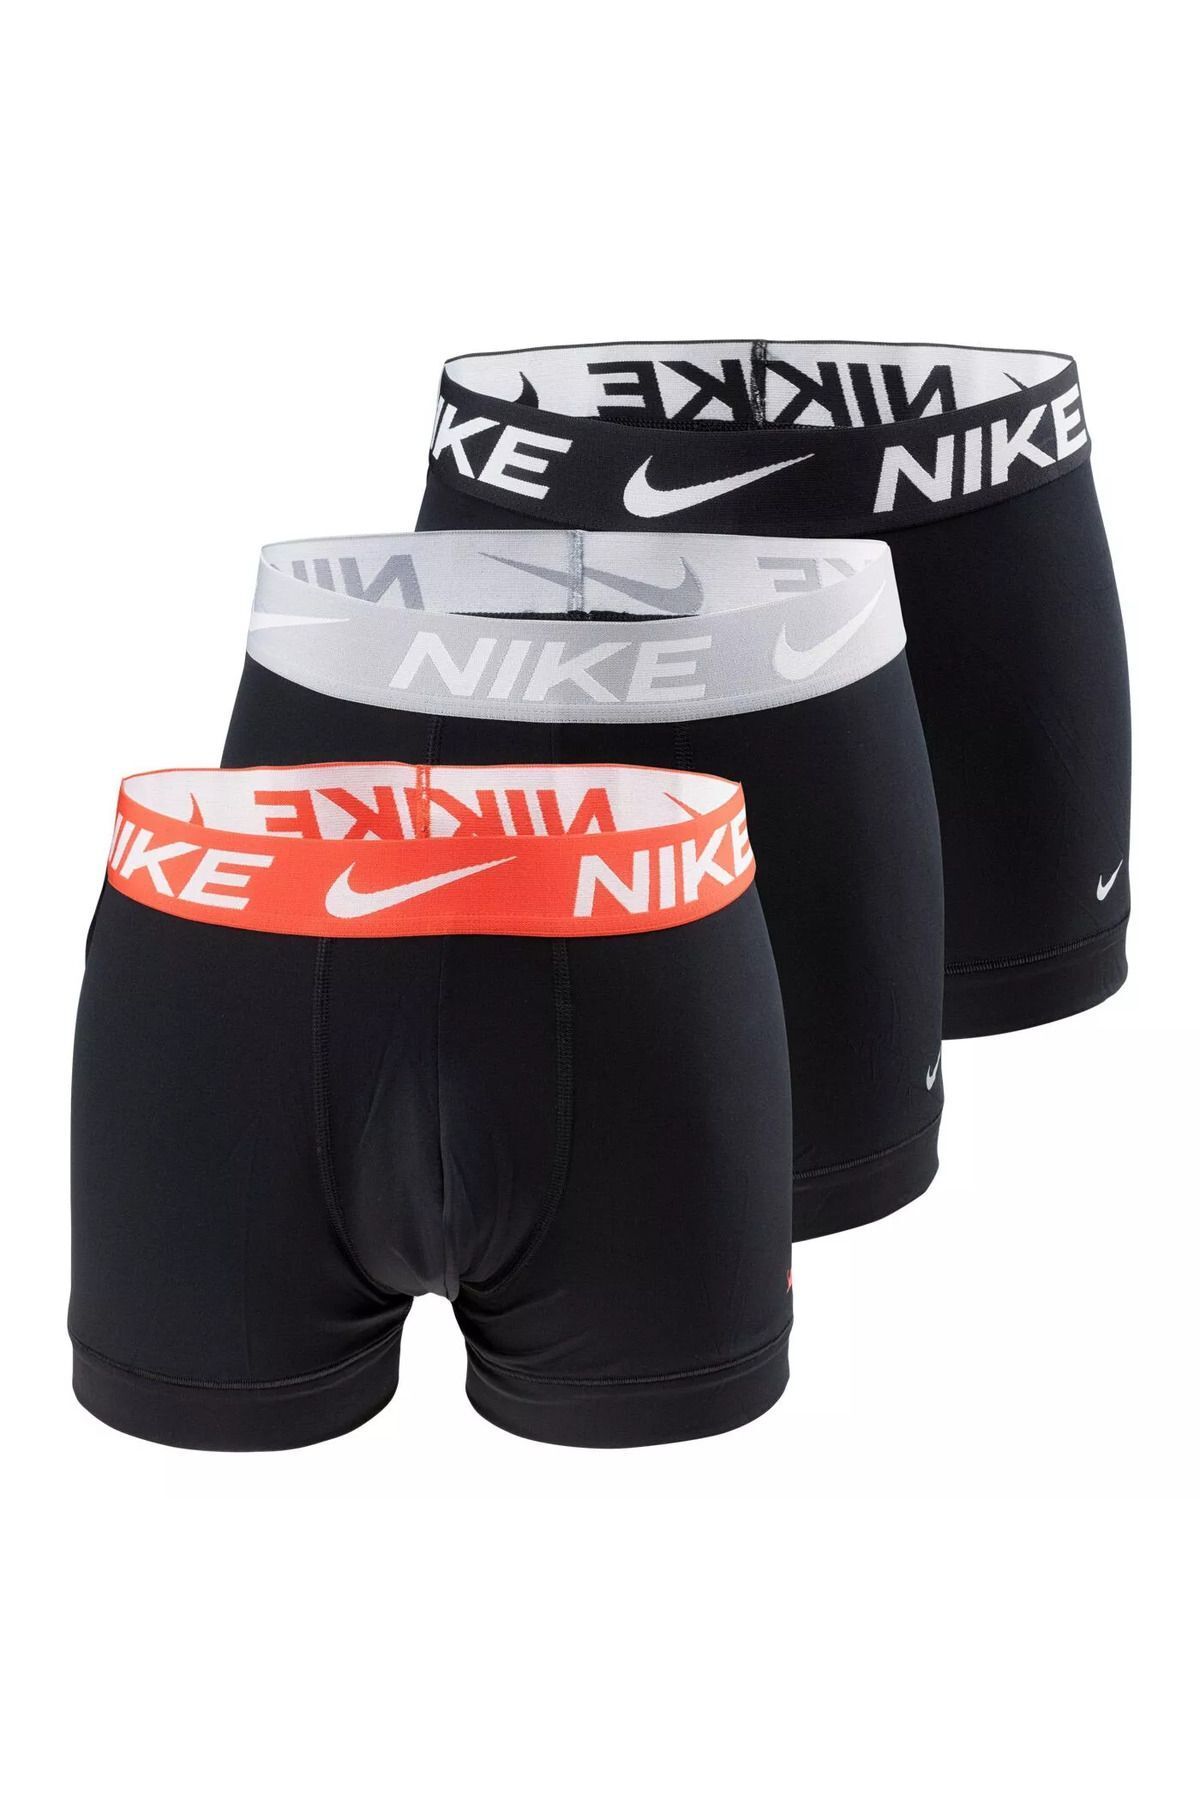 Nike Erkek Marka Logolu Elastik Bantlı Günlük Kullanıma Uygun Siyah Boxer 0000ke1156-c4r